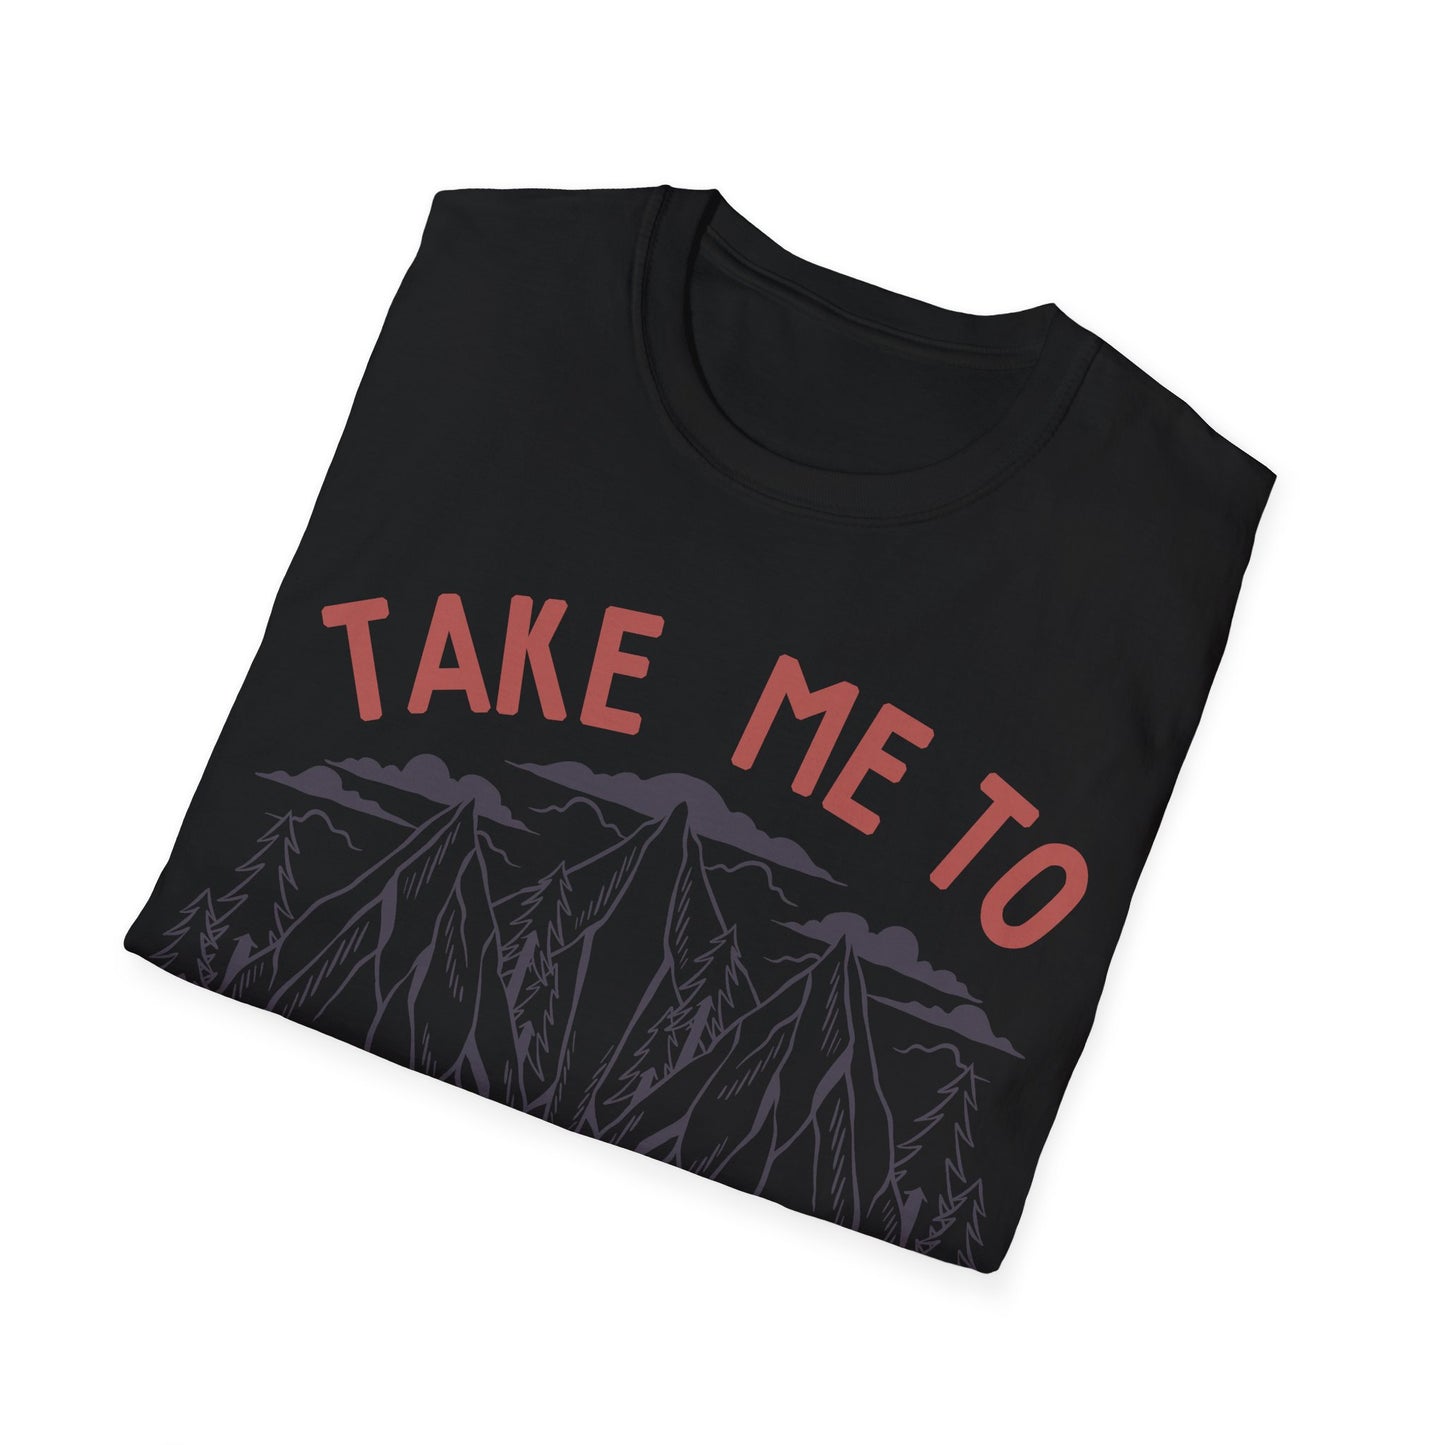 Take Me To The Lake T-Shirt